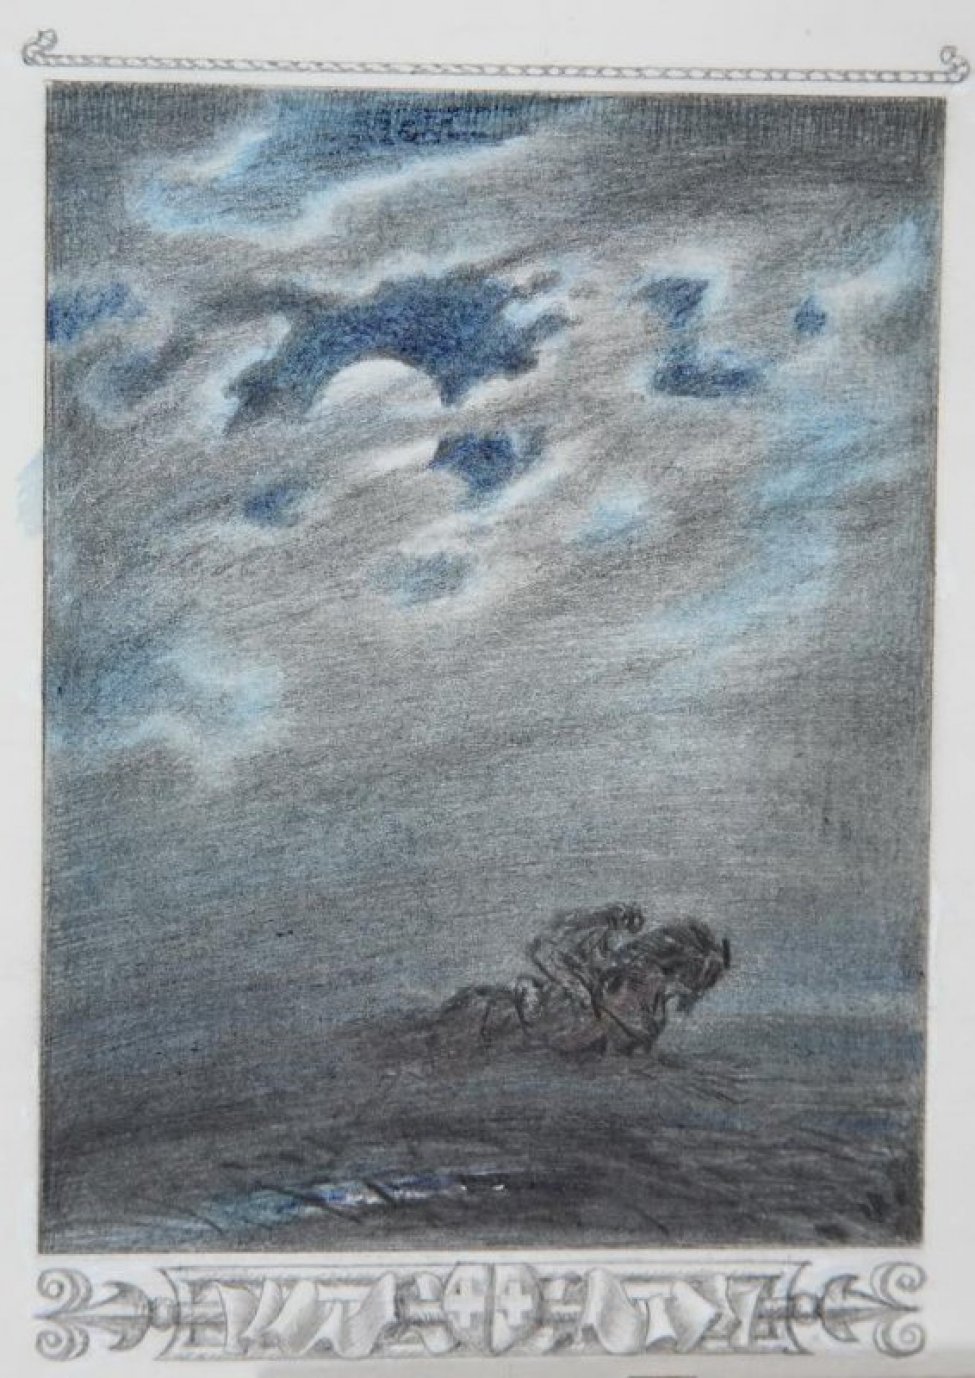 Изображен степной ночной пейзаж с фигурой одинокого всадника на скачущем коне.